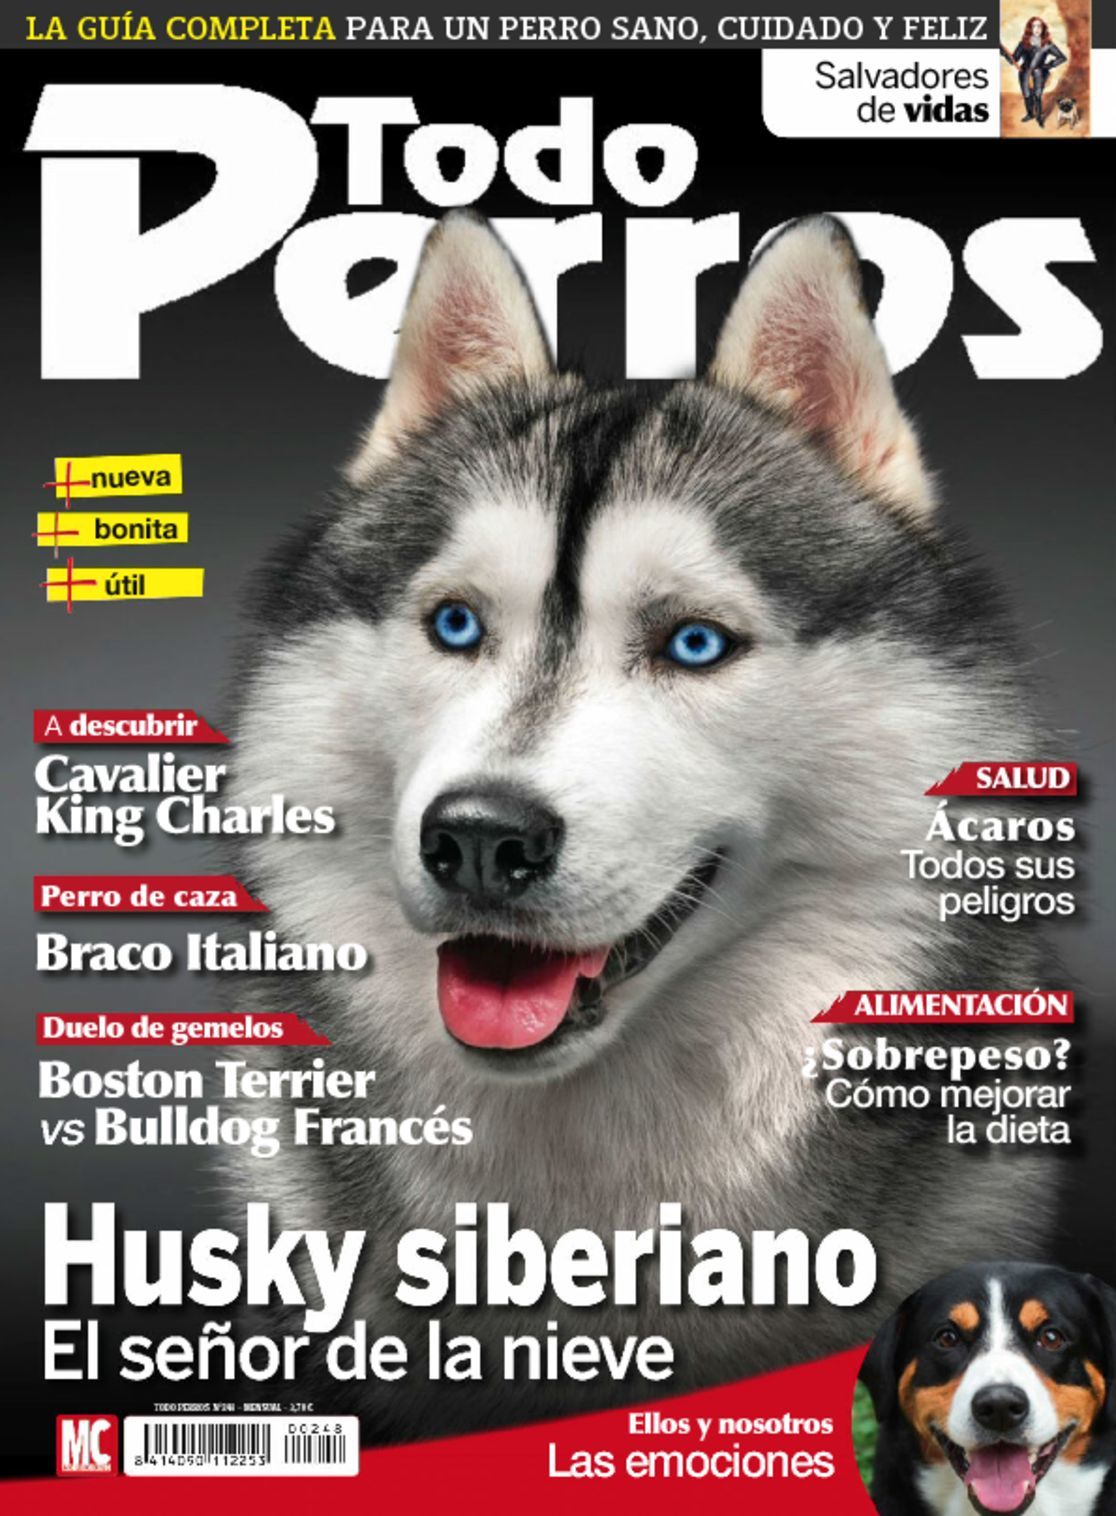 Saca la aseguranza He reconocido paso Todo Perros Magazine (Digital) Subscription Discount - DiscountMags.com